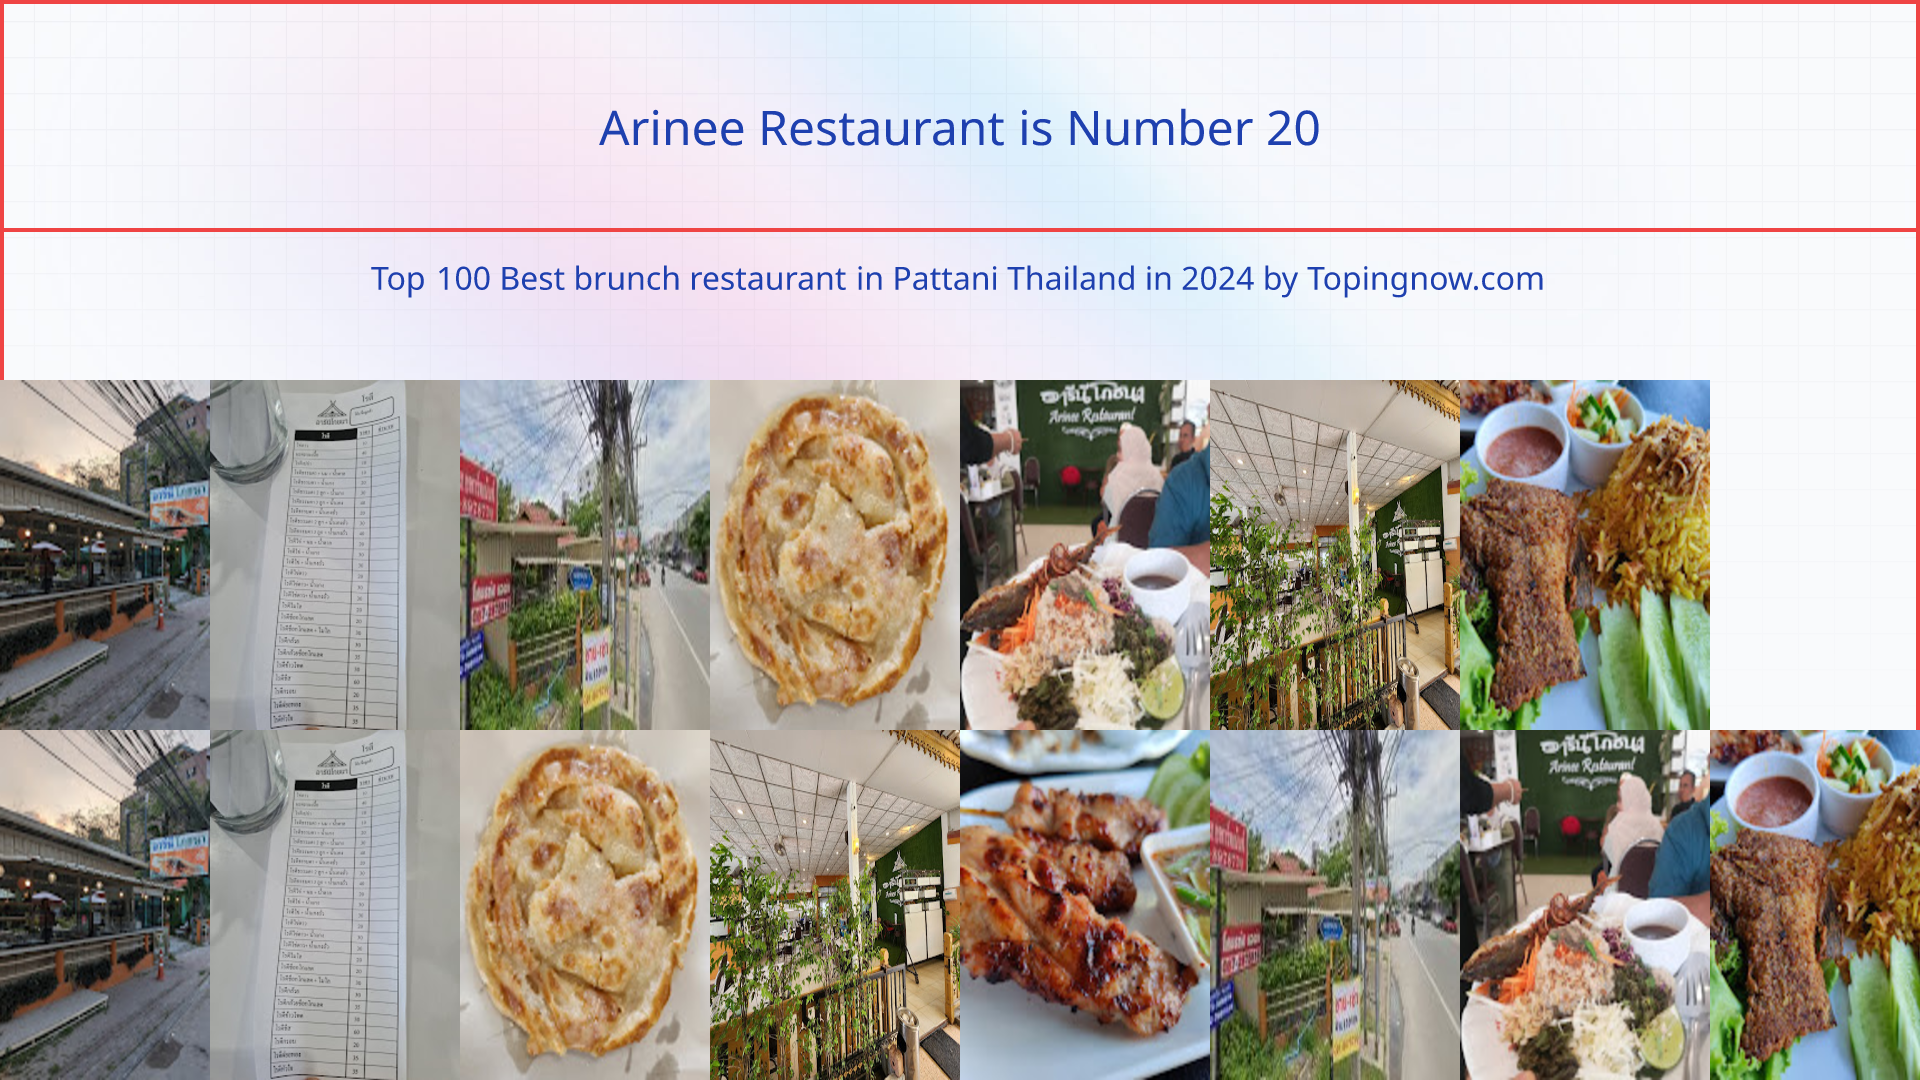 Arinee Restaurant: Top 100 Best brunch restaurant in Pattani Thailand in 2024